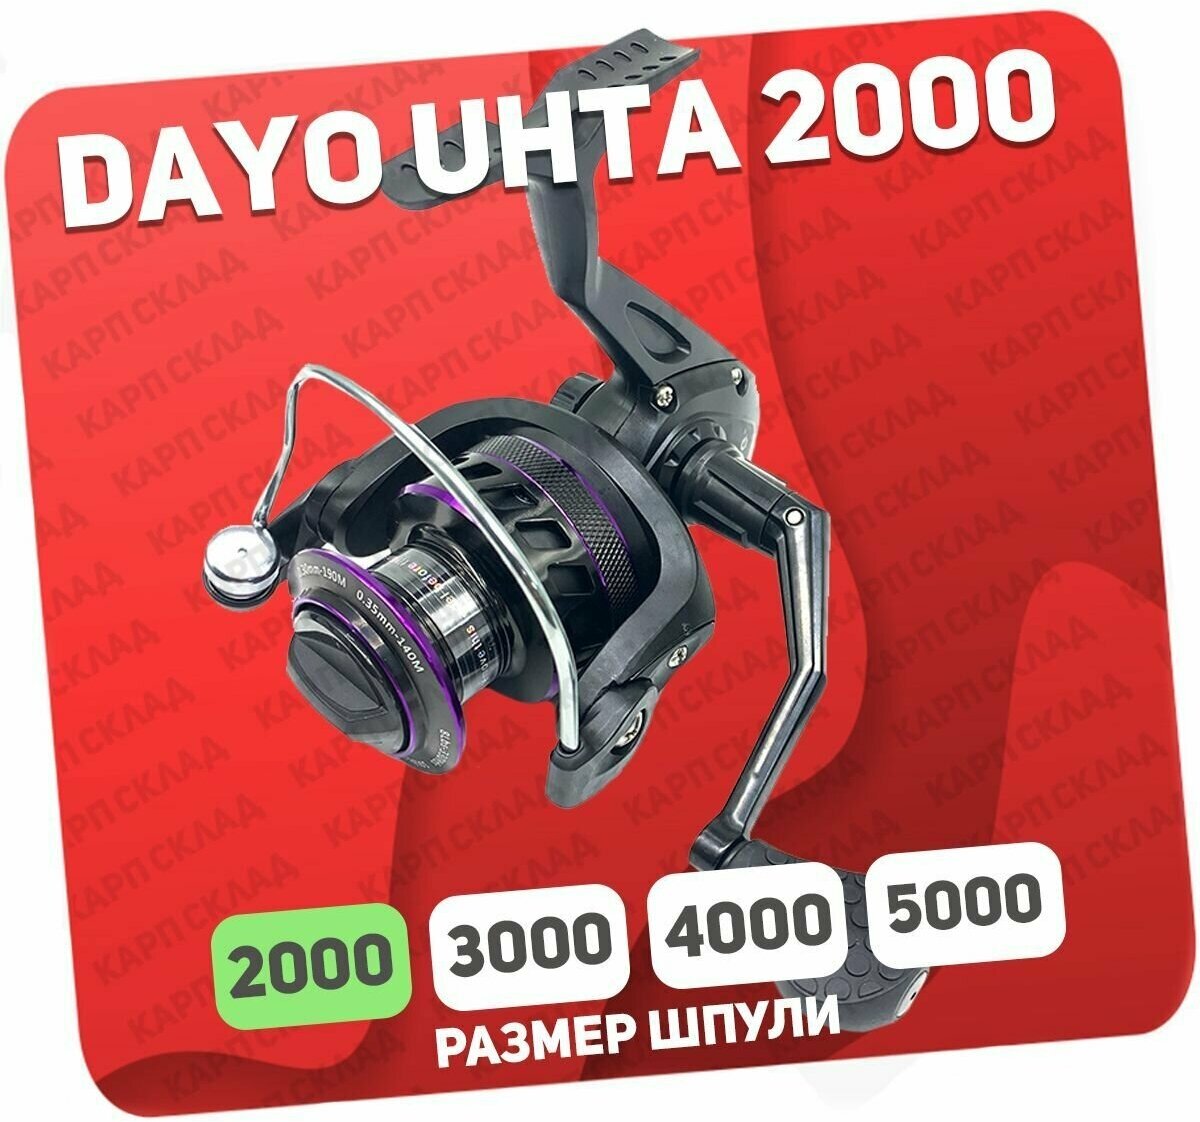 Катушка рыболовная DAYO UHTA 2000 для фидера